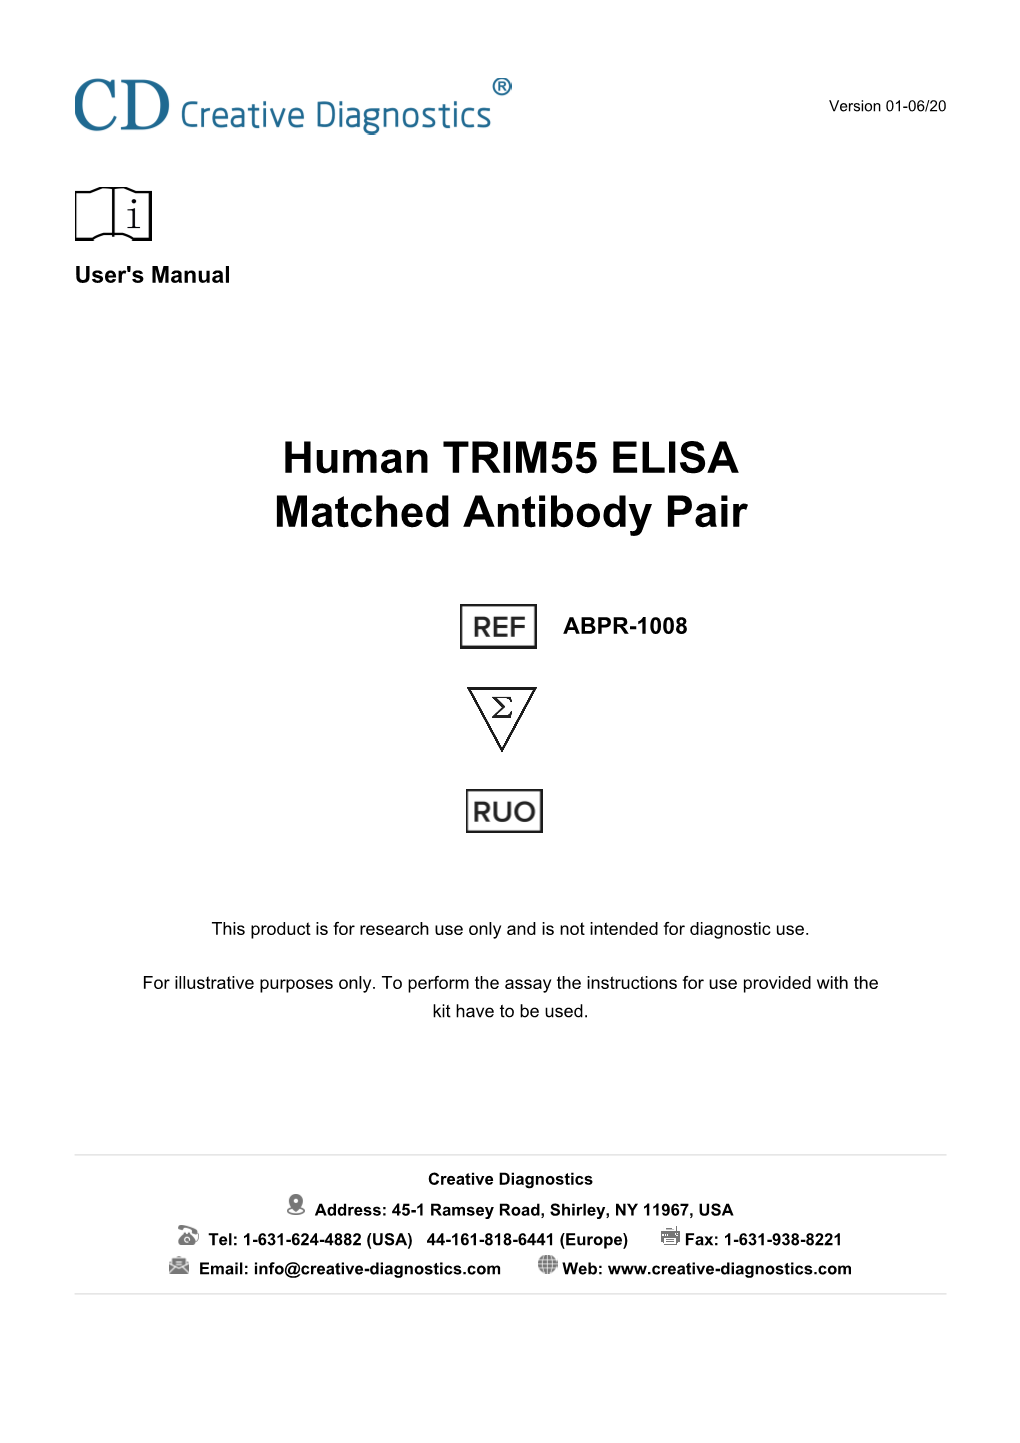 Human TRIM55 ELISA Matched Antibody Pair